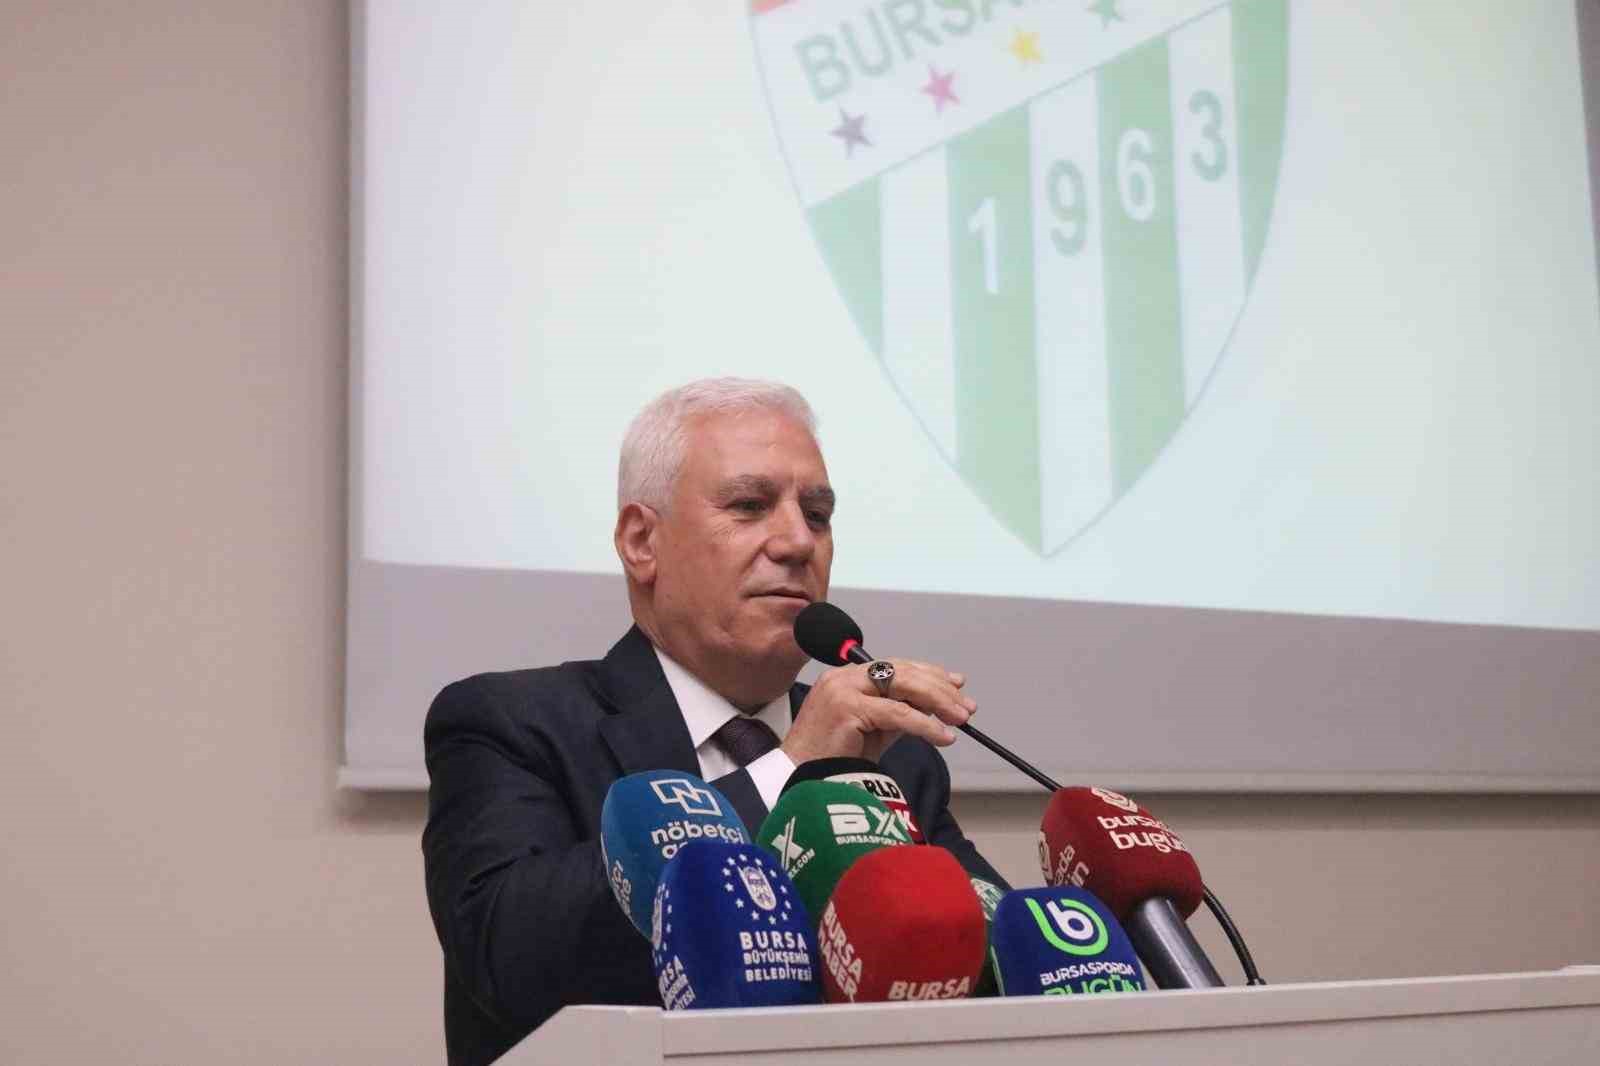 Bursa Büyükşehir Belediye Başkanı Mustafa Bozbey: “Bursaspor İçin Sistem Oluşturmalıyız”